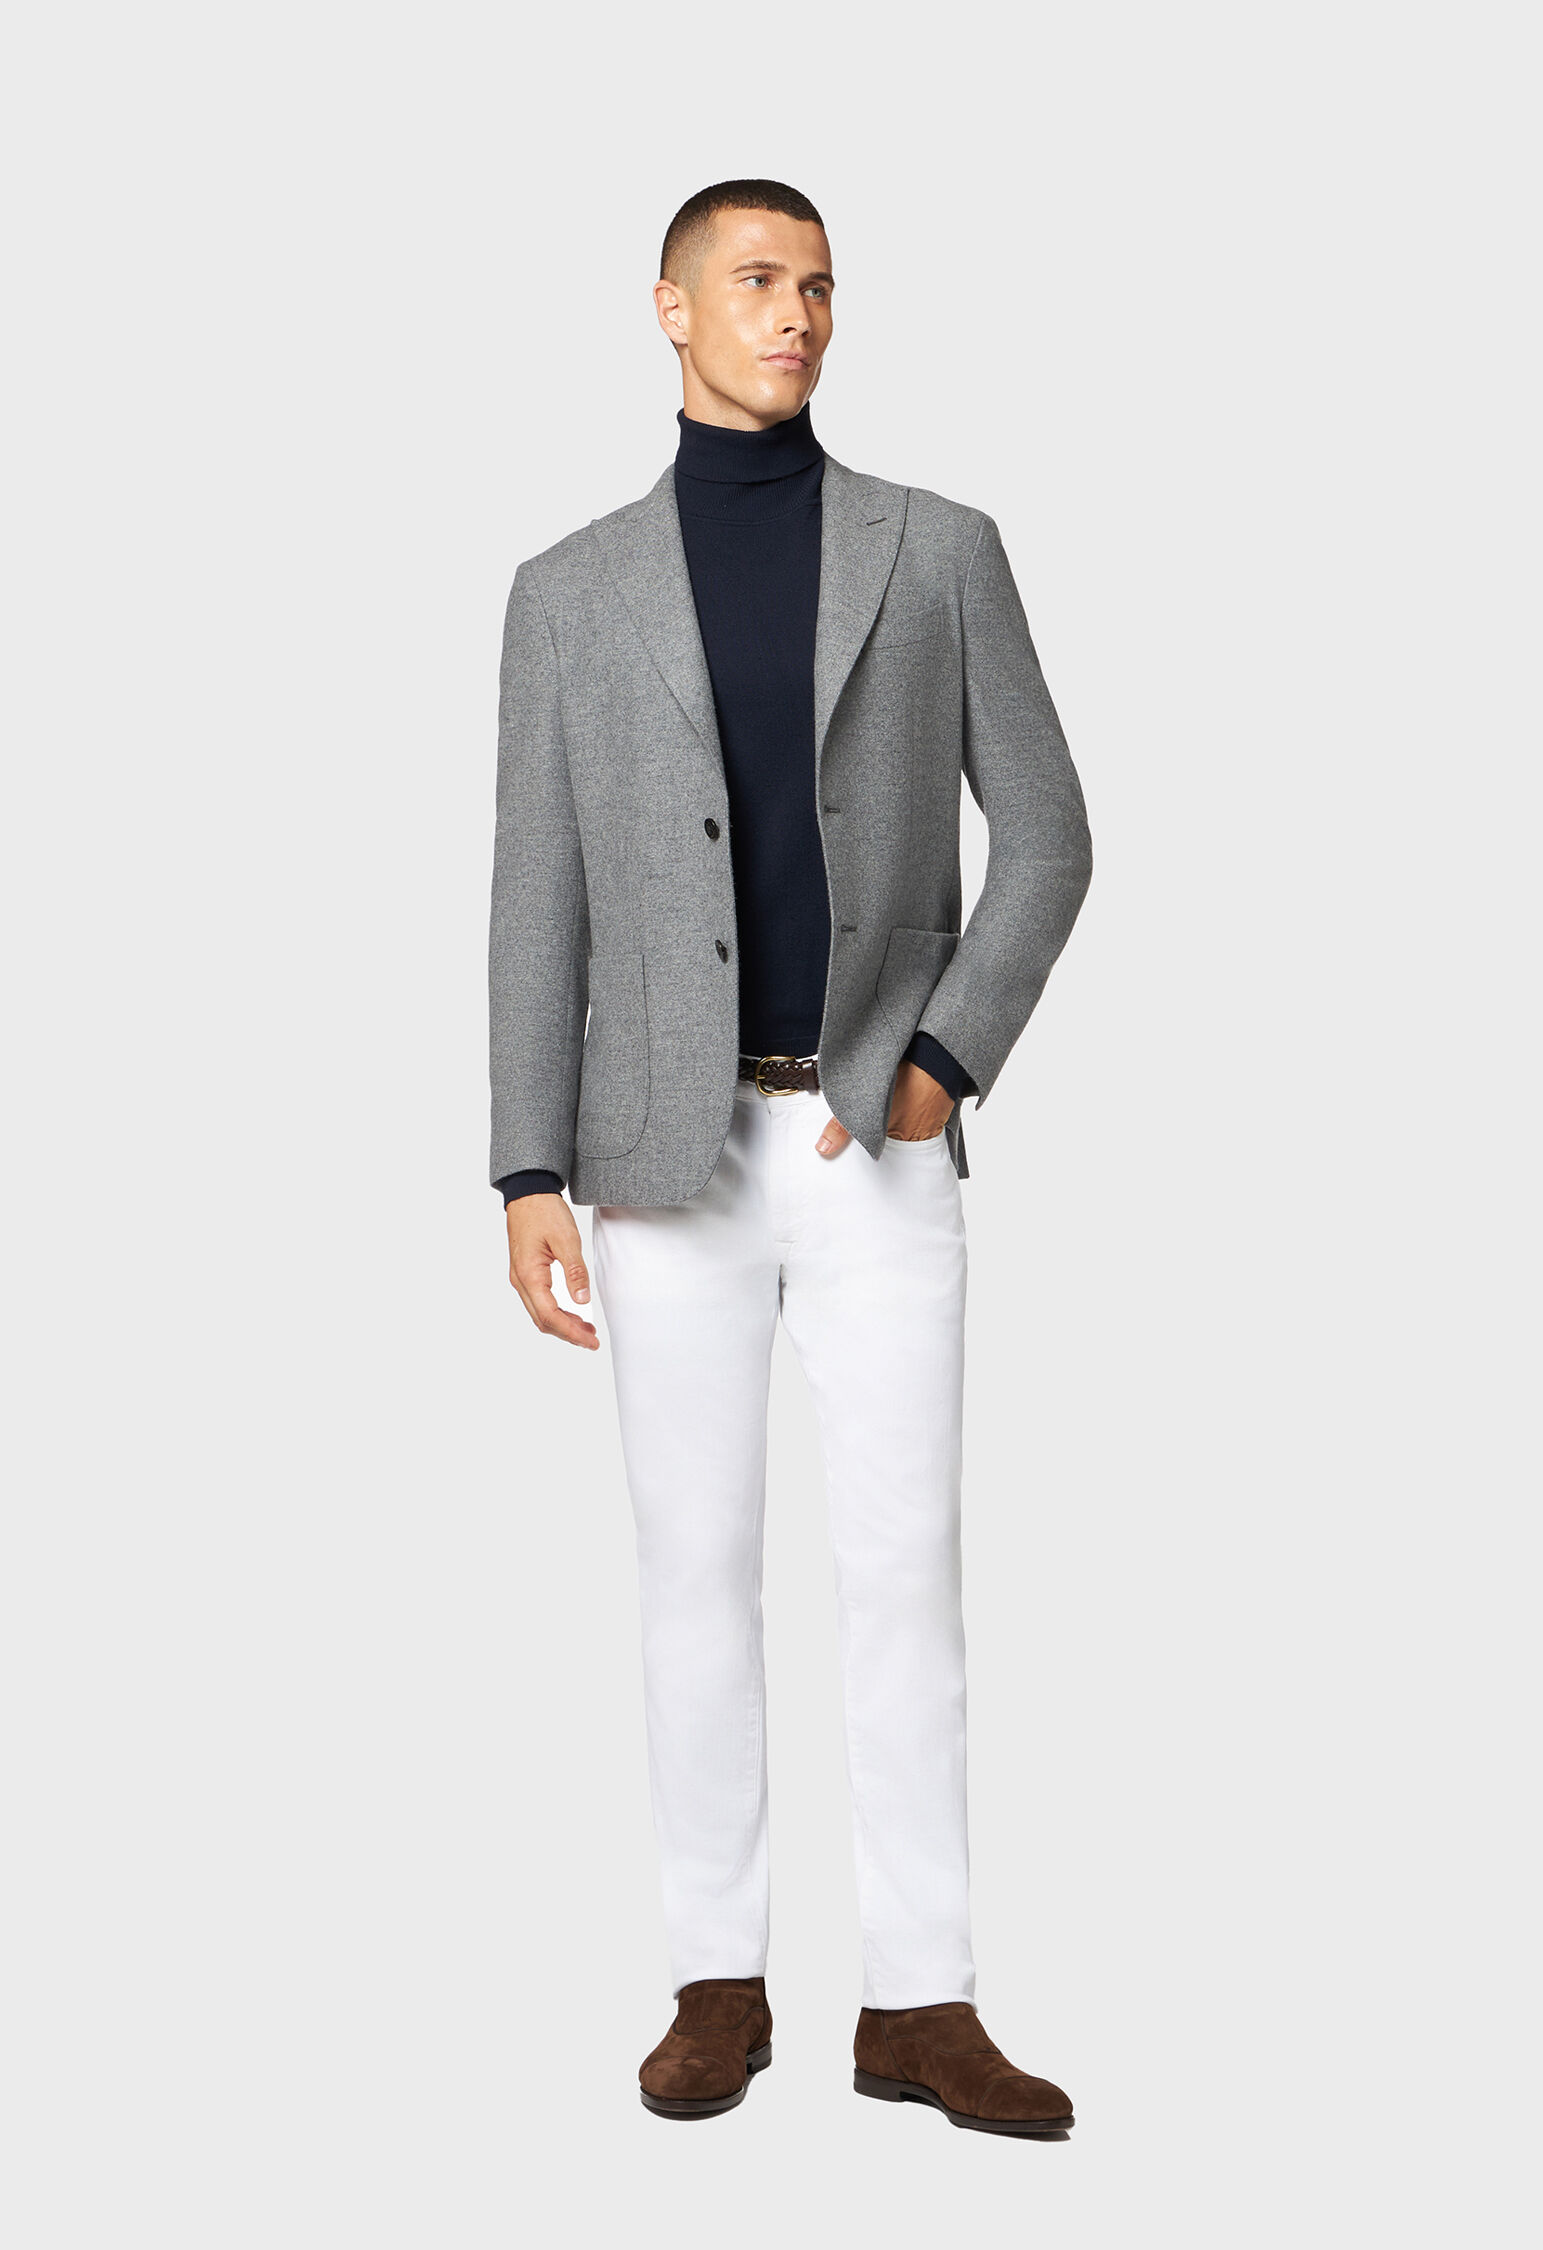 1950s Mens Wool Tweed Jacket Gray Stripe – Style & Salvage